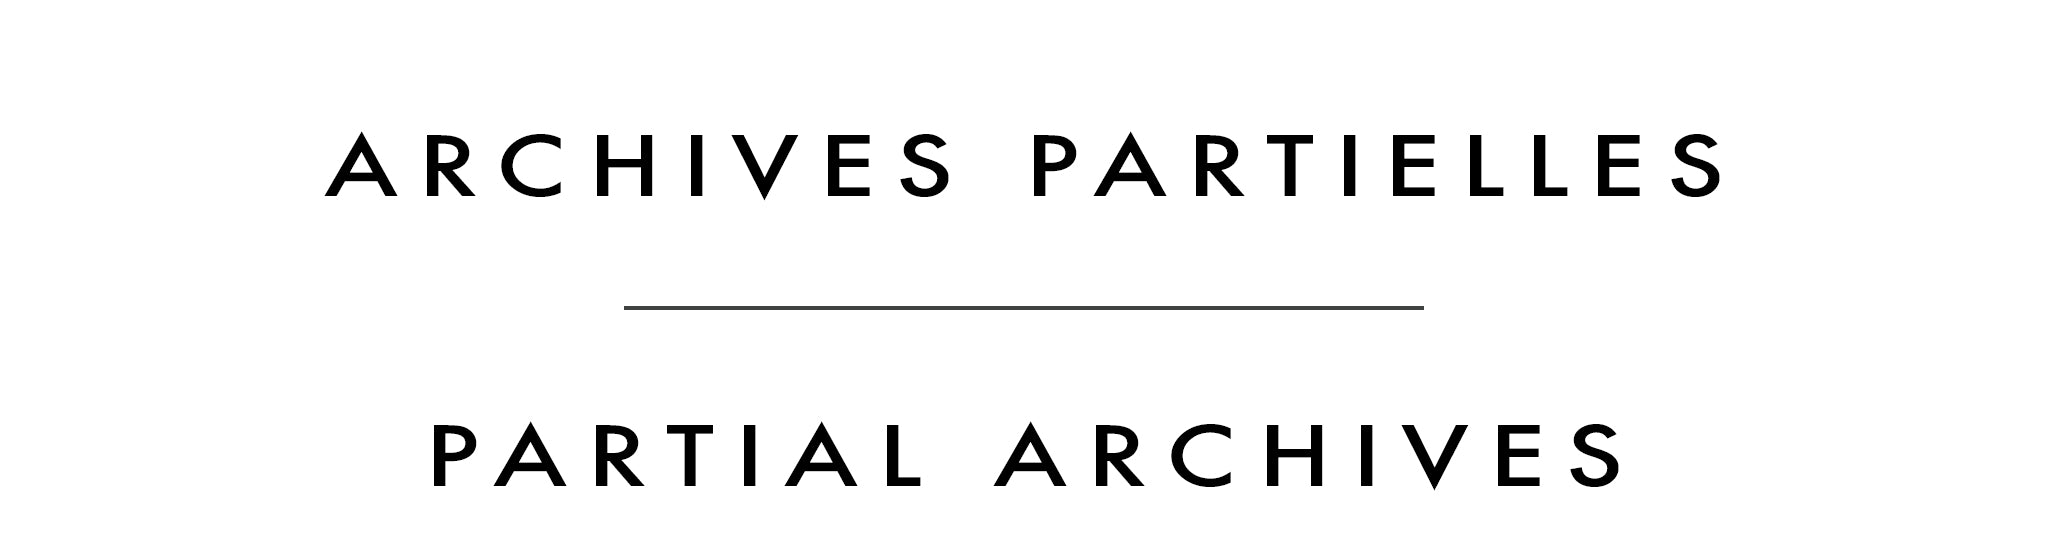 Archives partielles | Partial Archives | Marie-Claude Boucher